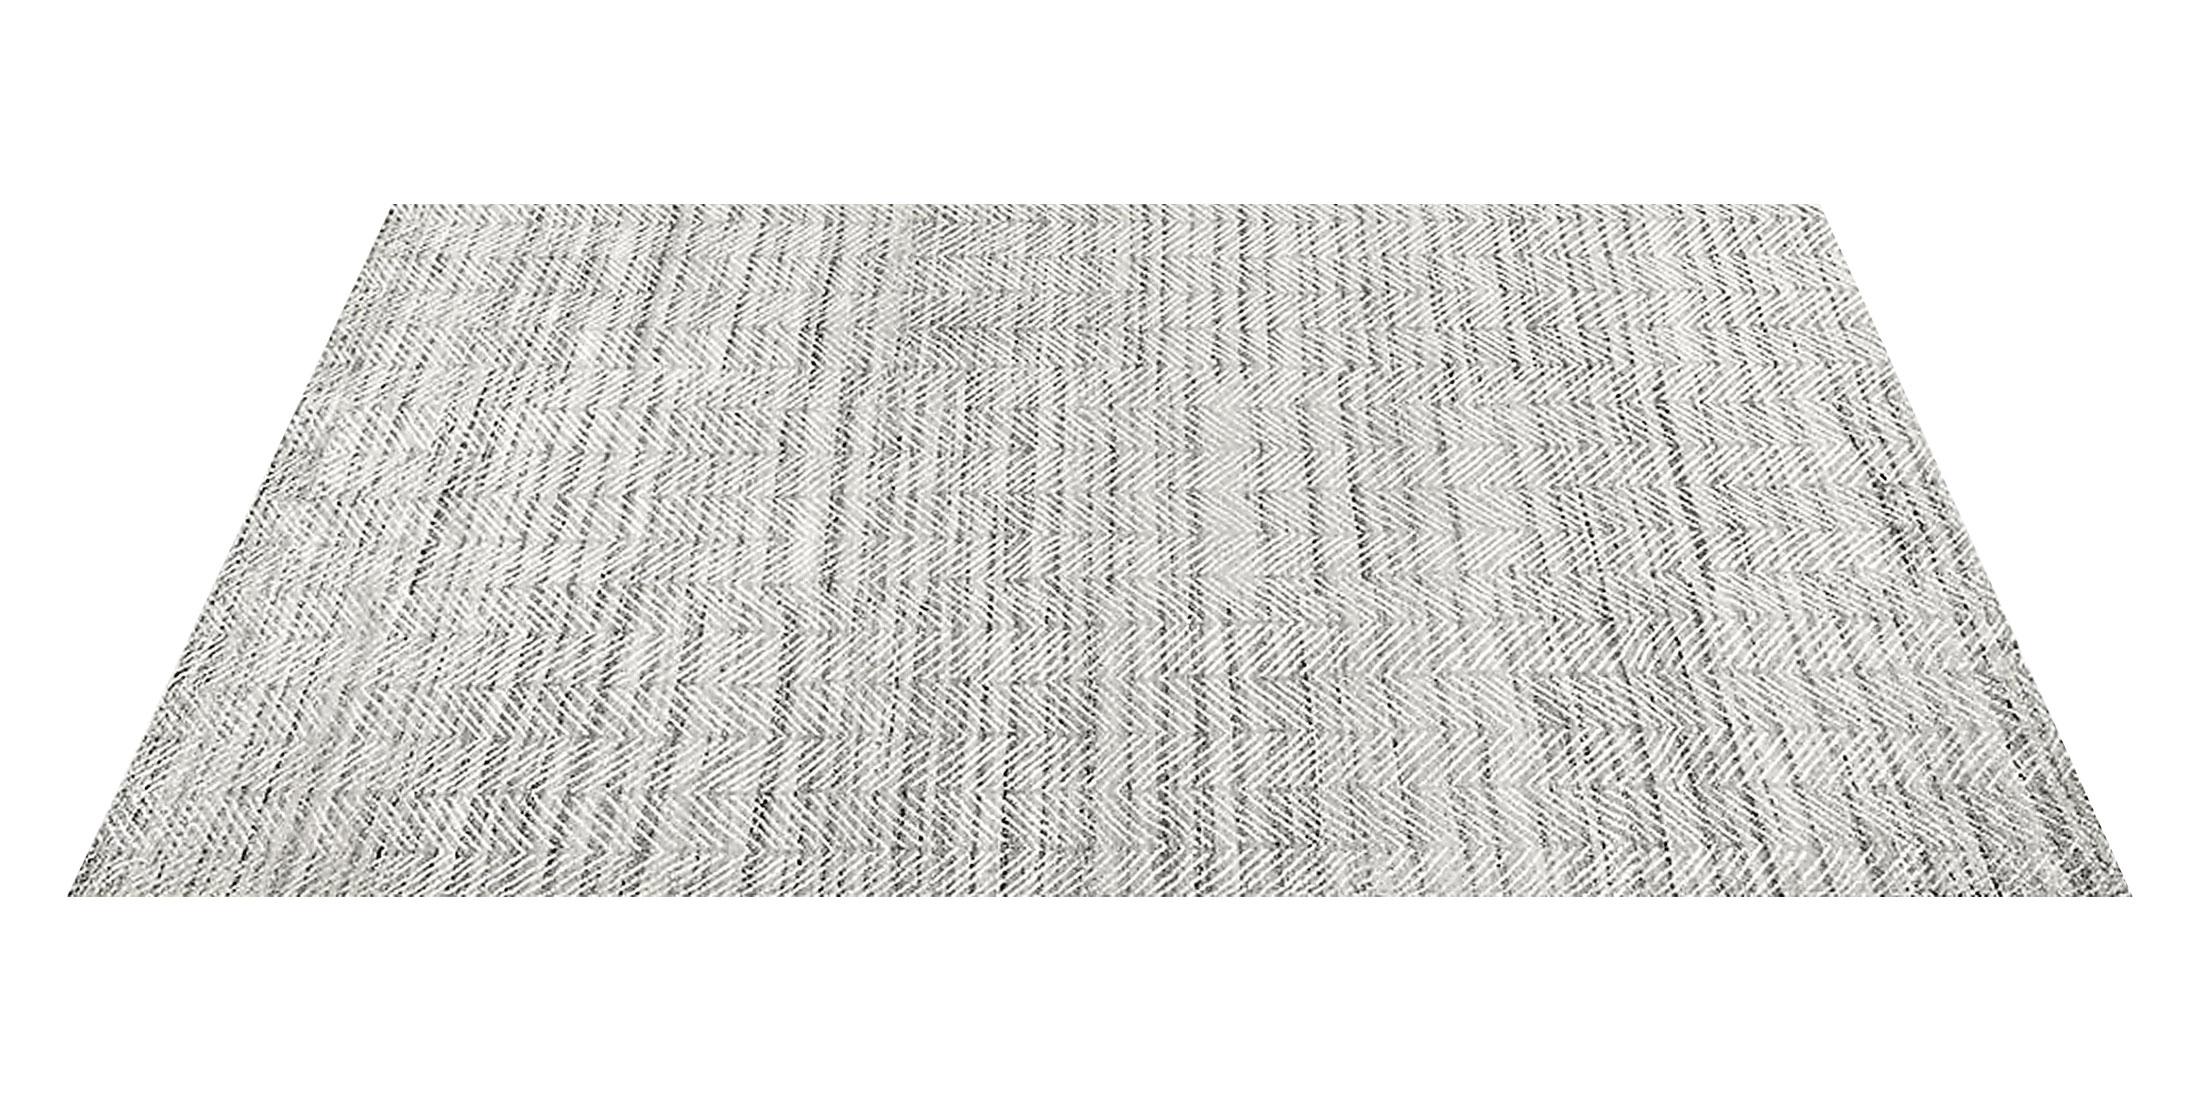 For Sale: Gray (Silver/White) Ben Soleimani Alia Rug– Hand-woven Chevron Wool + Viscose Black/Gray 12'x15' 2